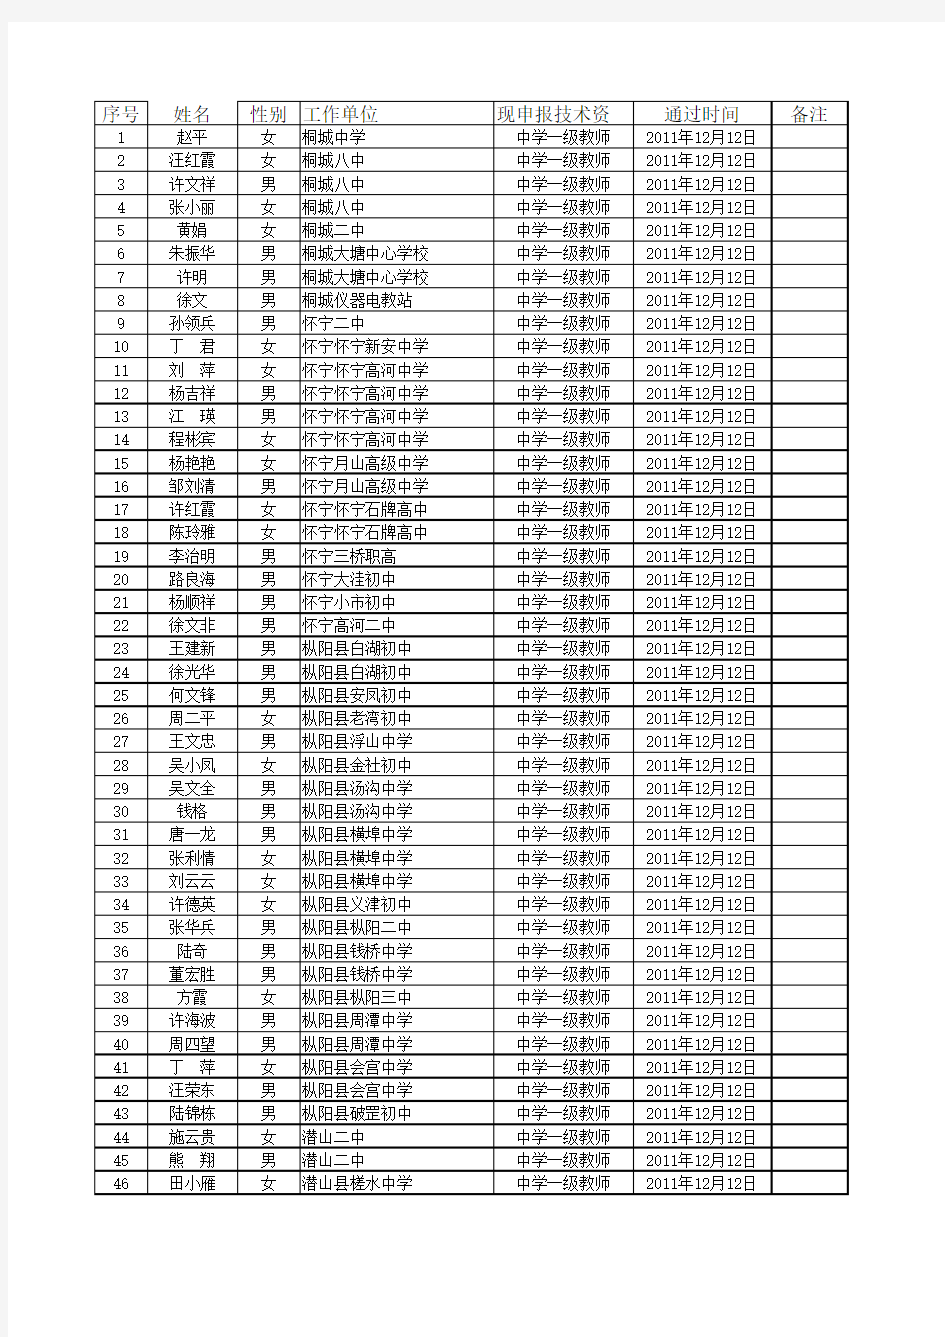 2011年安庆市中学一级教师任职资格评审通过人员名单公示